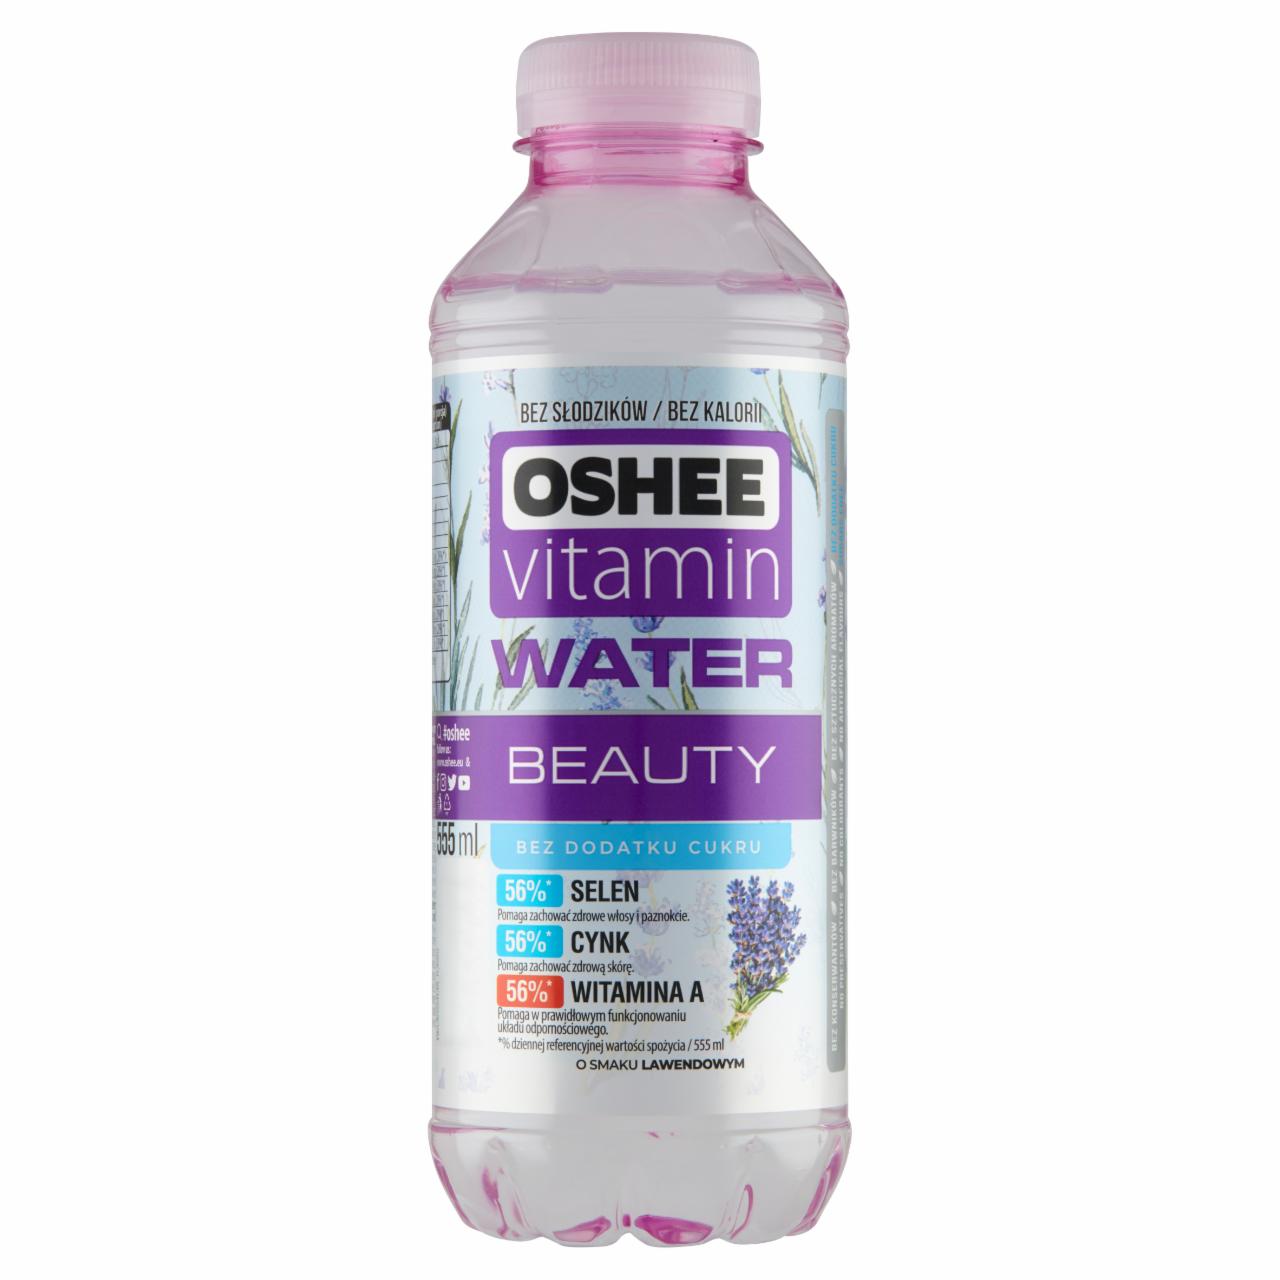 Zdjęcia - Oshee Vitamin Water Napój niegazowany o smaku lawendowym 555 ml